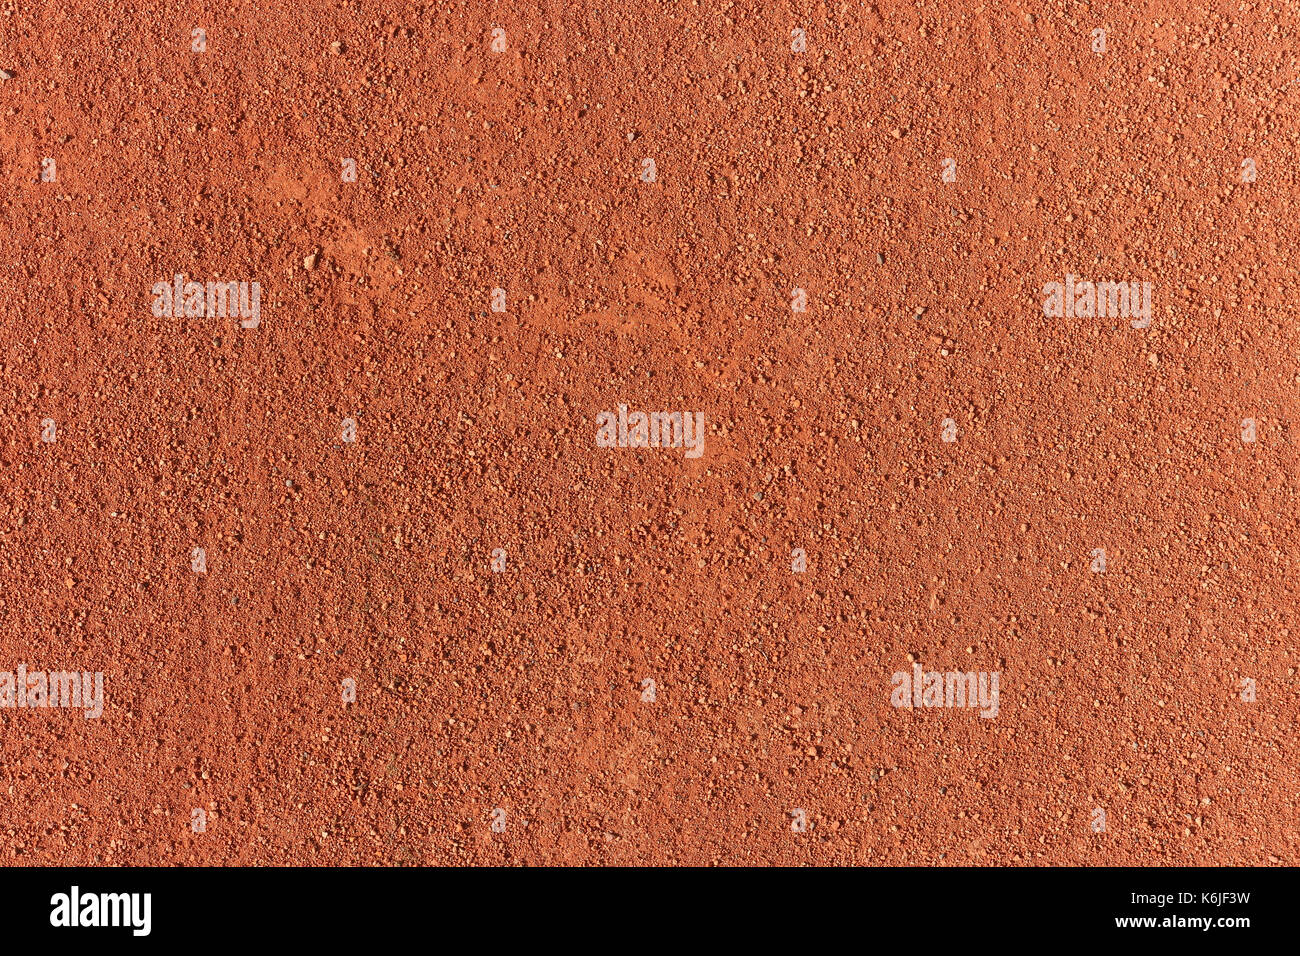 Tennis court ground surface texture. Tennis sport background. Stock Photo